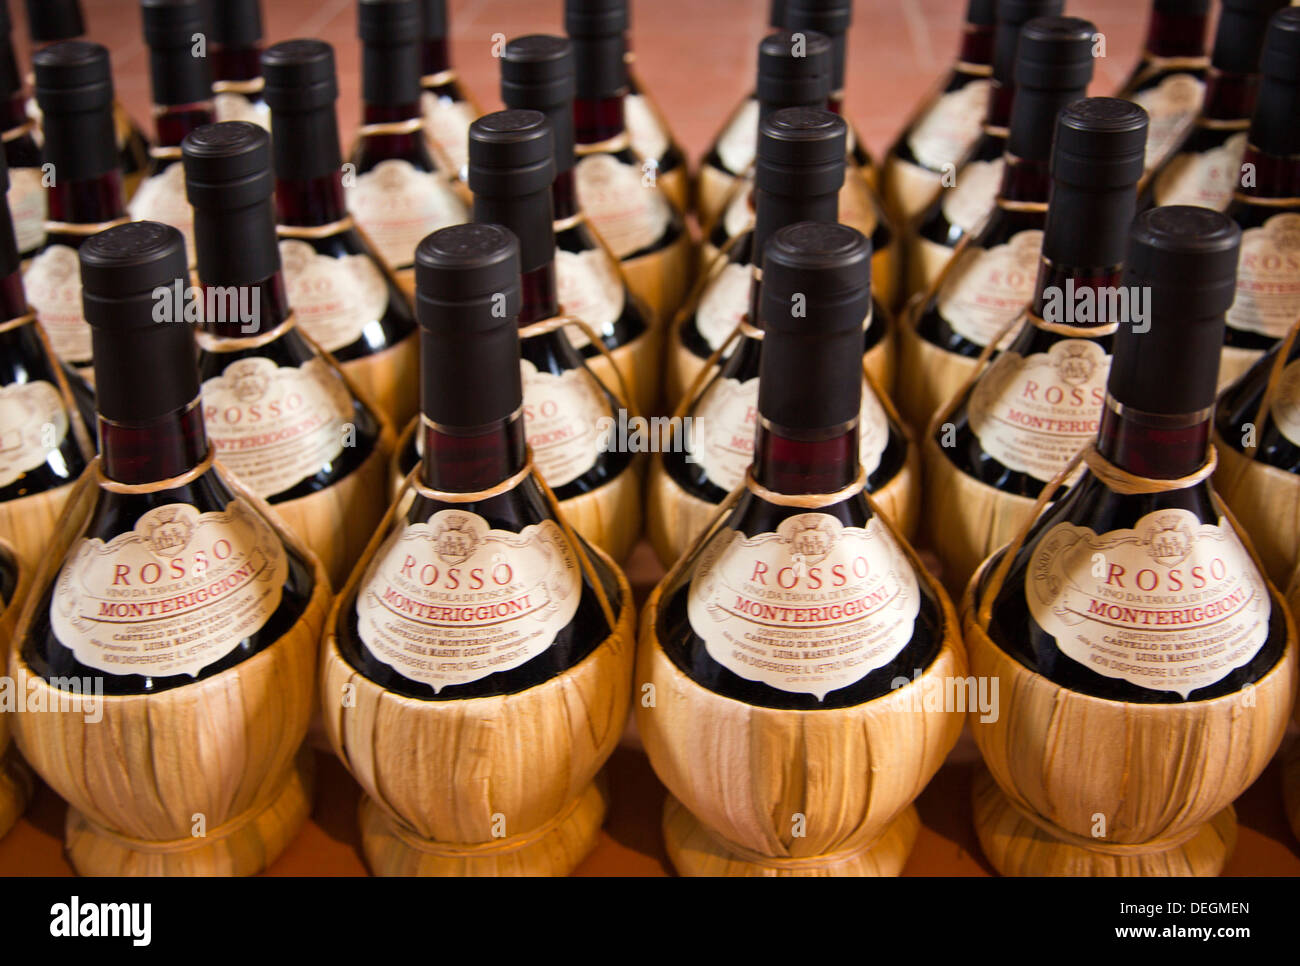 Les bouteilles de vin en cave, Monteriggioni, Province de Sienne, Toscane, Italie Banque D'Images